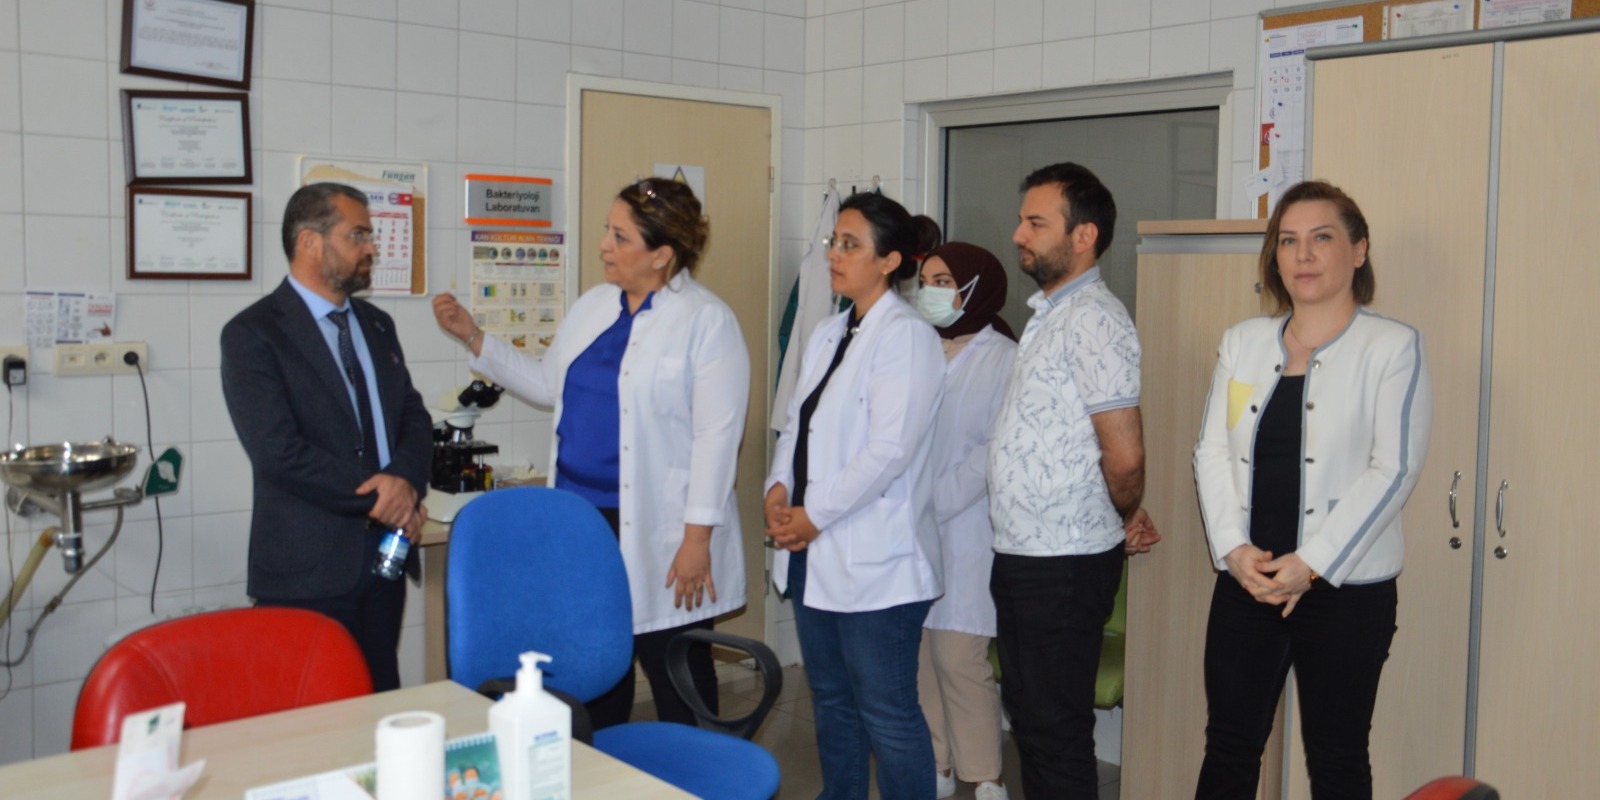 Başhekimimiz Uz. Dr. Mehmet Tamer Özdemir  ve hastane yönetimimiz tarafından Eczane, laboratuvar, yemekhane, anjiyografi, merkezi sterilizasyon ünitesi, depolar ve sağlık kurulu birimlerimiz ziyaret edilmiştir. 